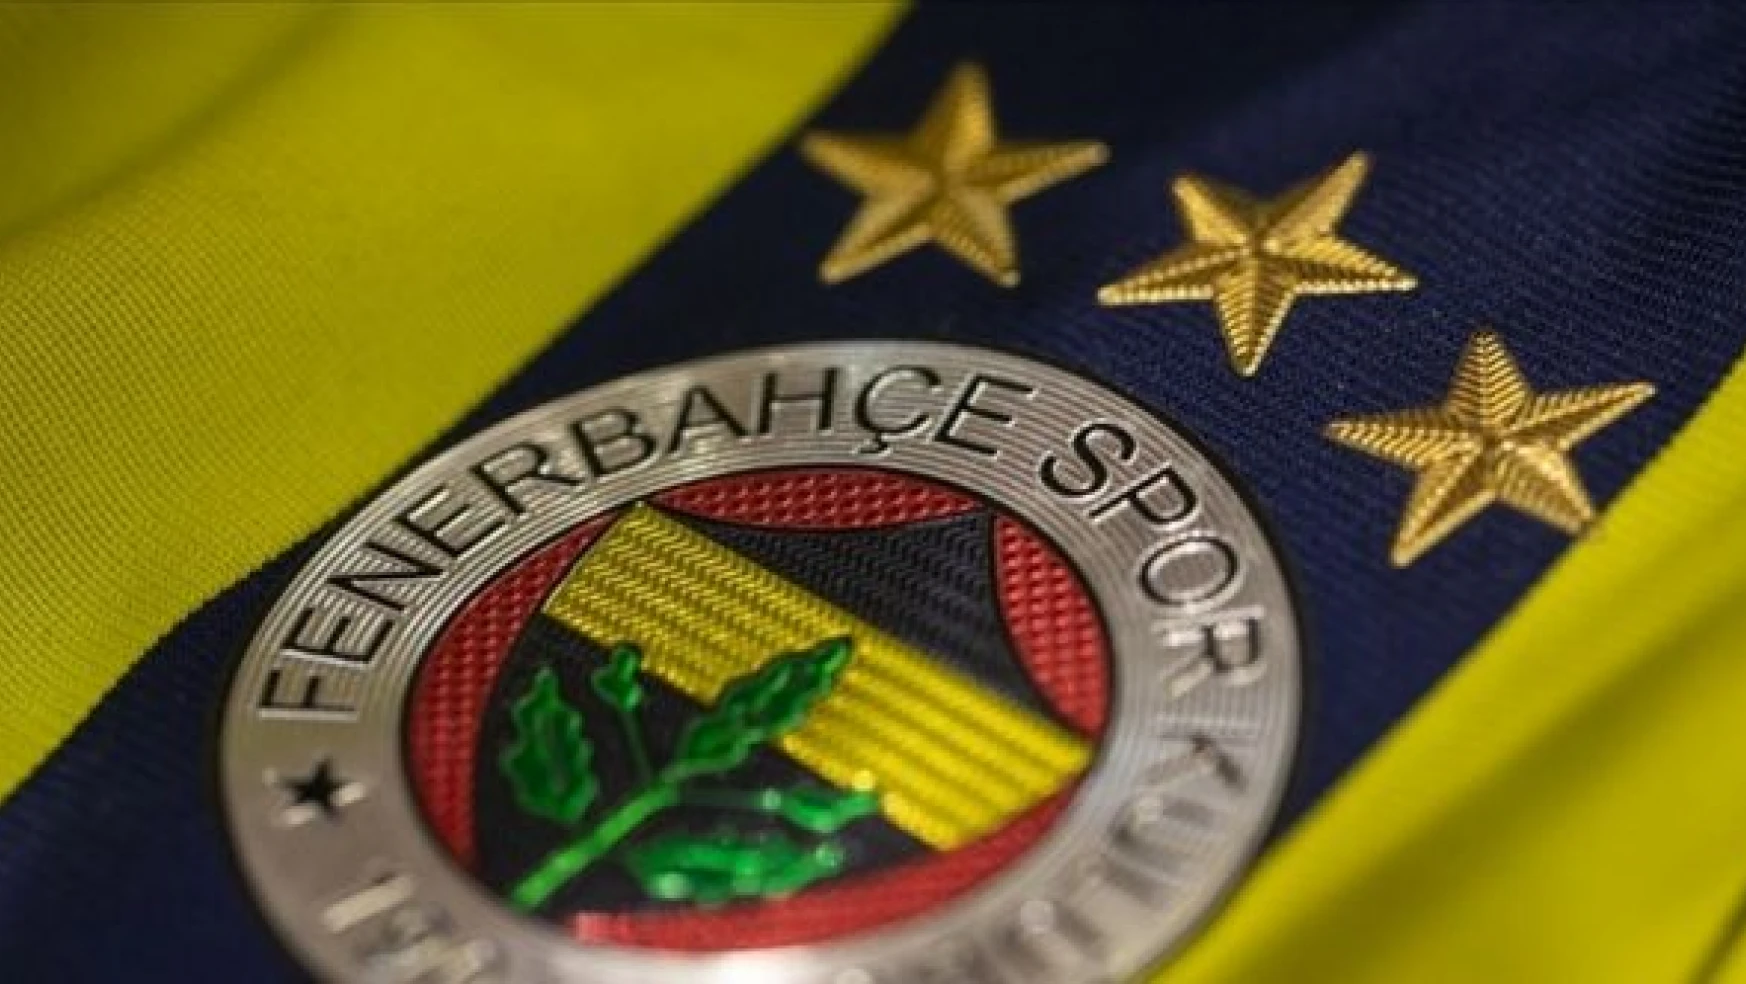 Fenerbahçe'den TFF seçimi hakkında açıklama